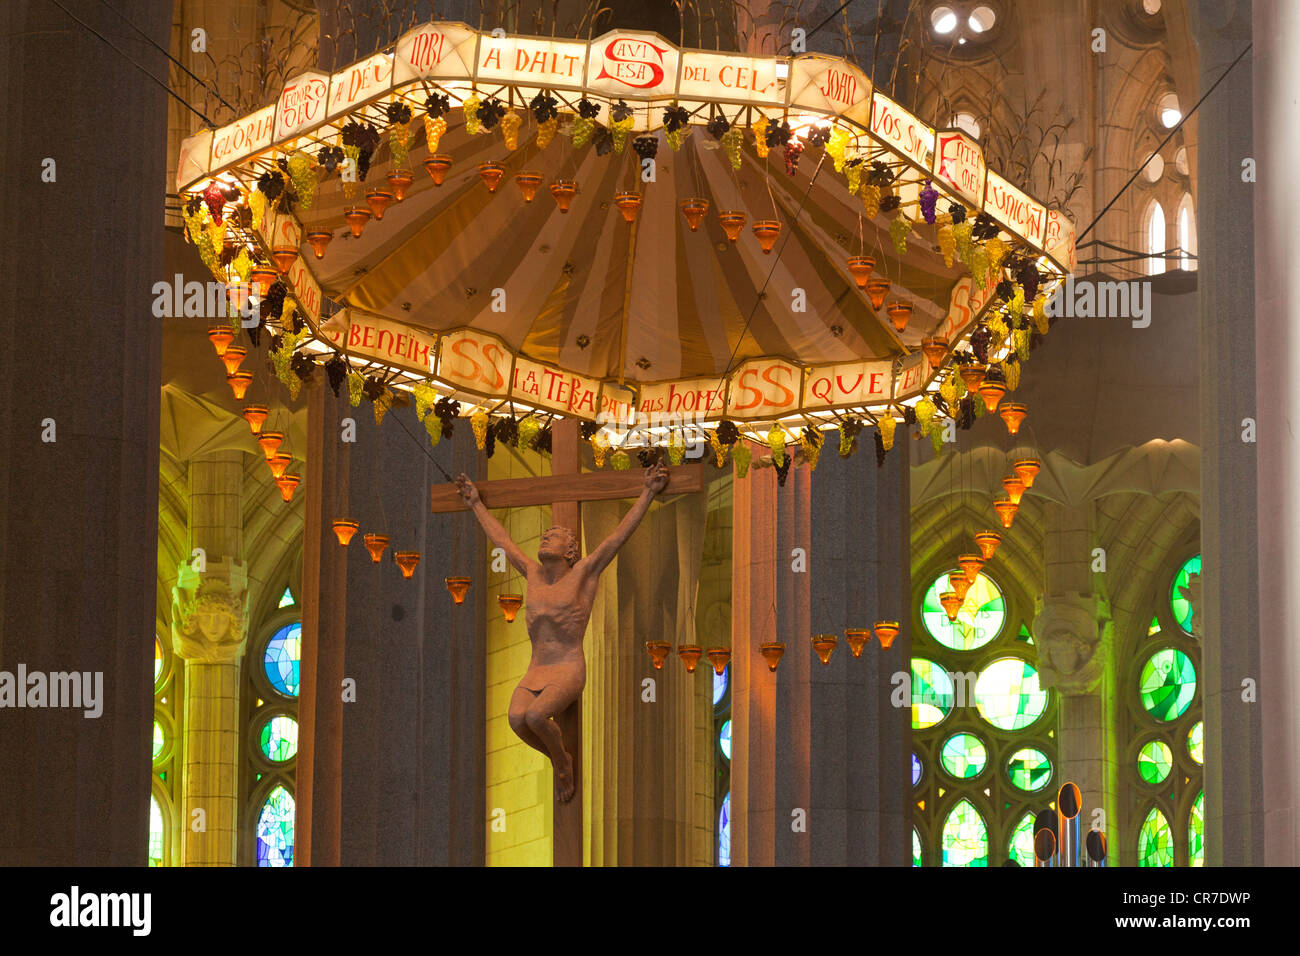 Il soffitto della chiesa, altare con un baldacchino o tettoia del membro interno della Sagrada Familia, alla Basílica ho Tempio Expiatori de la Foto Stock